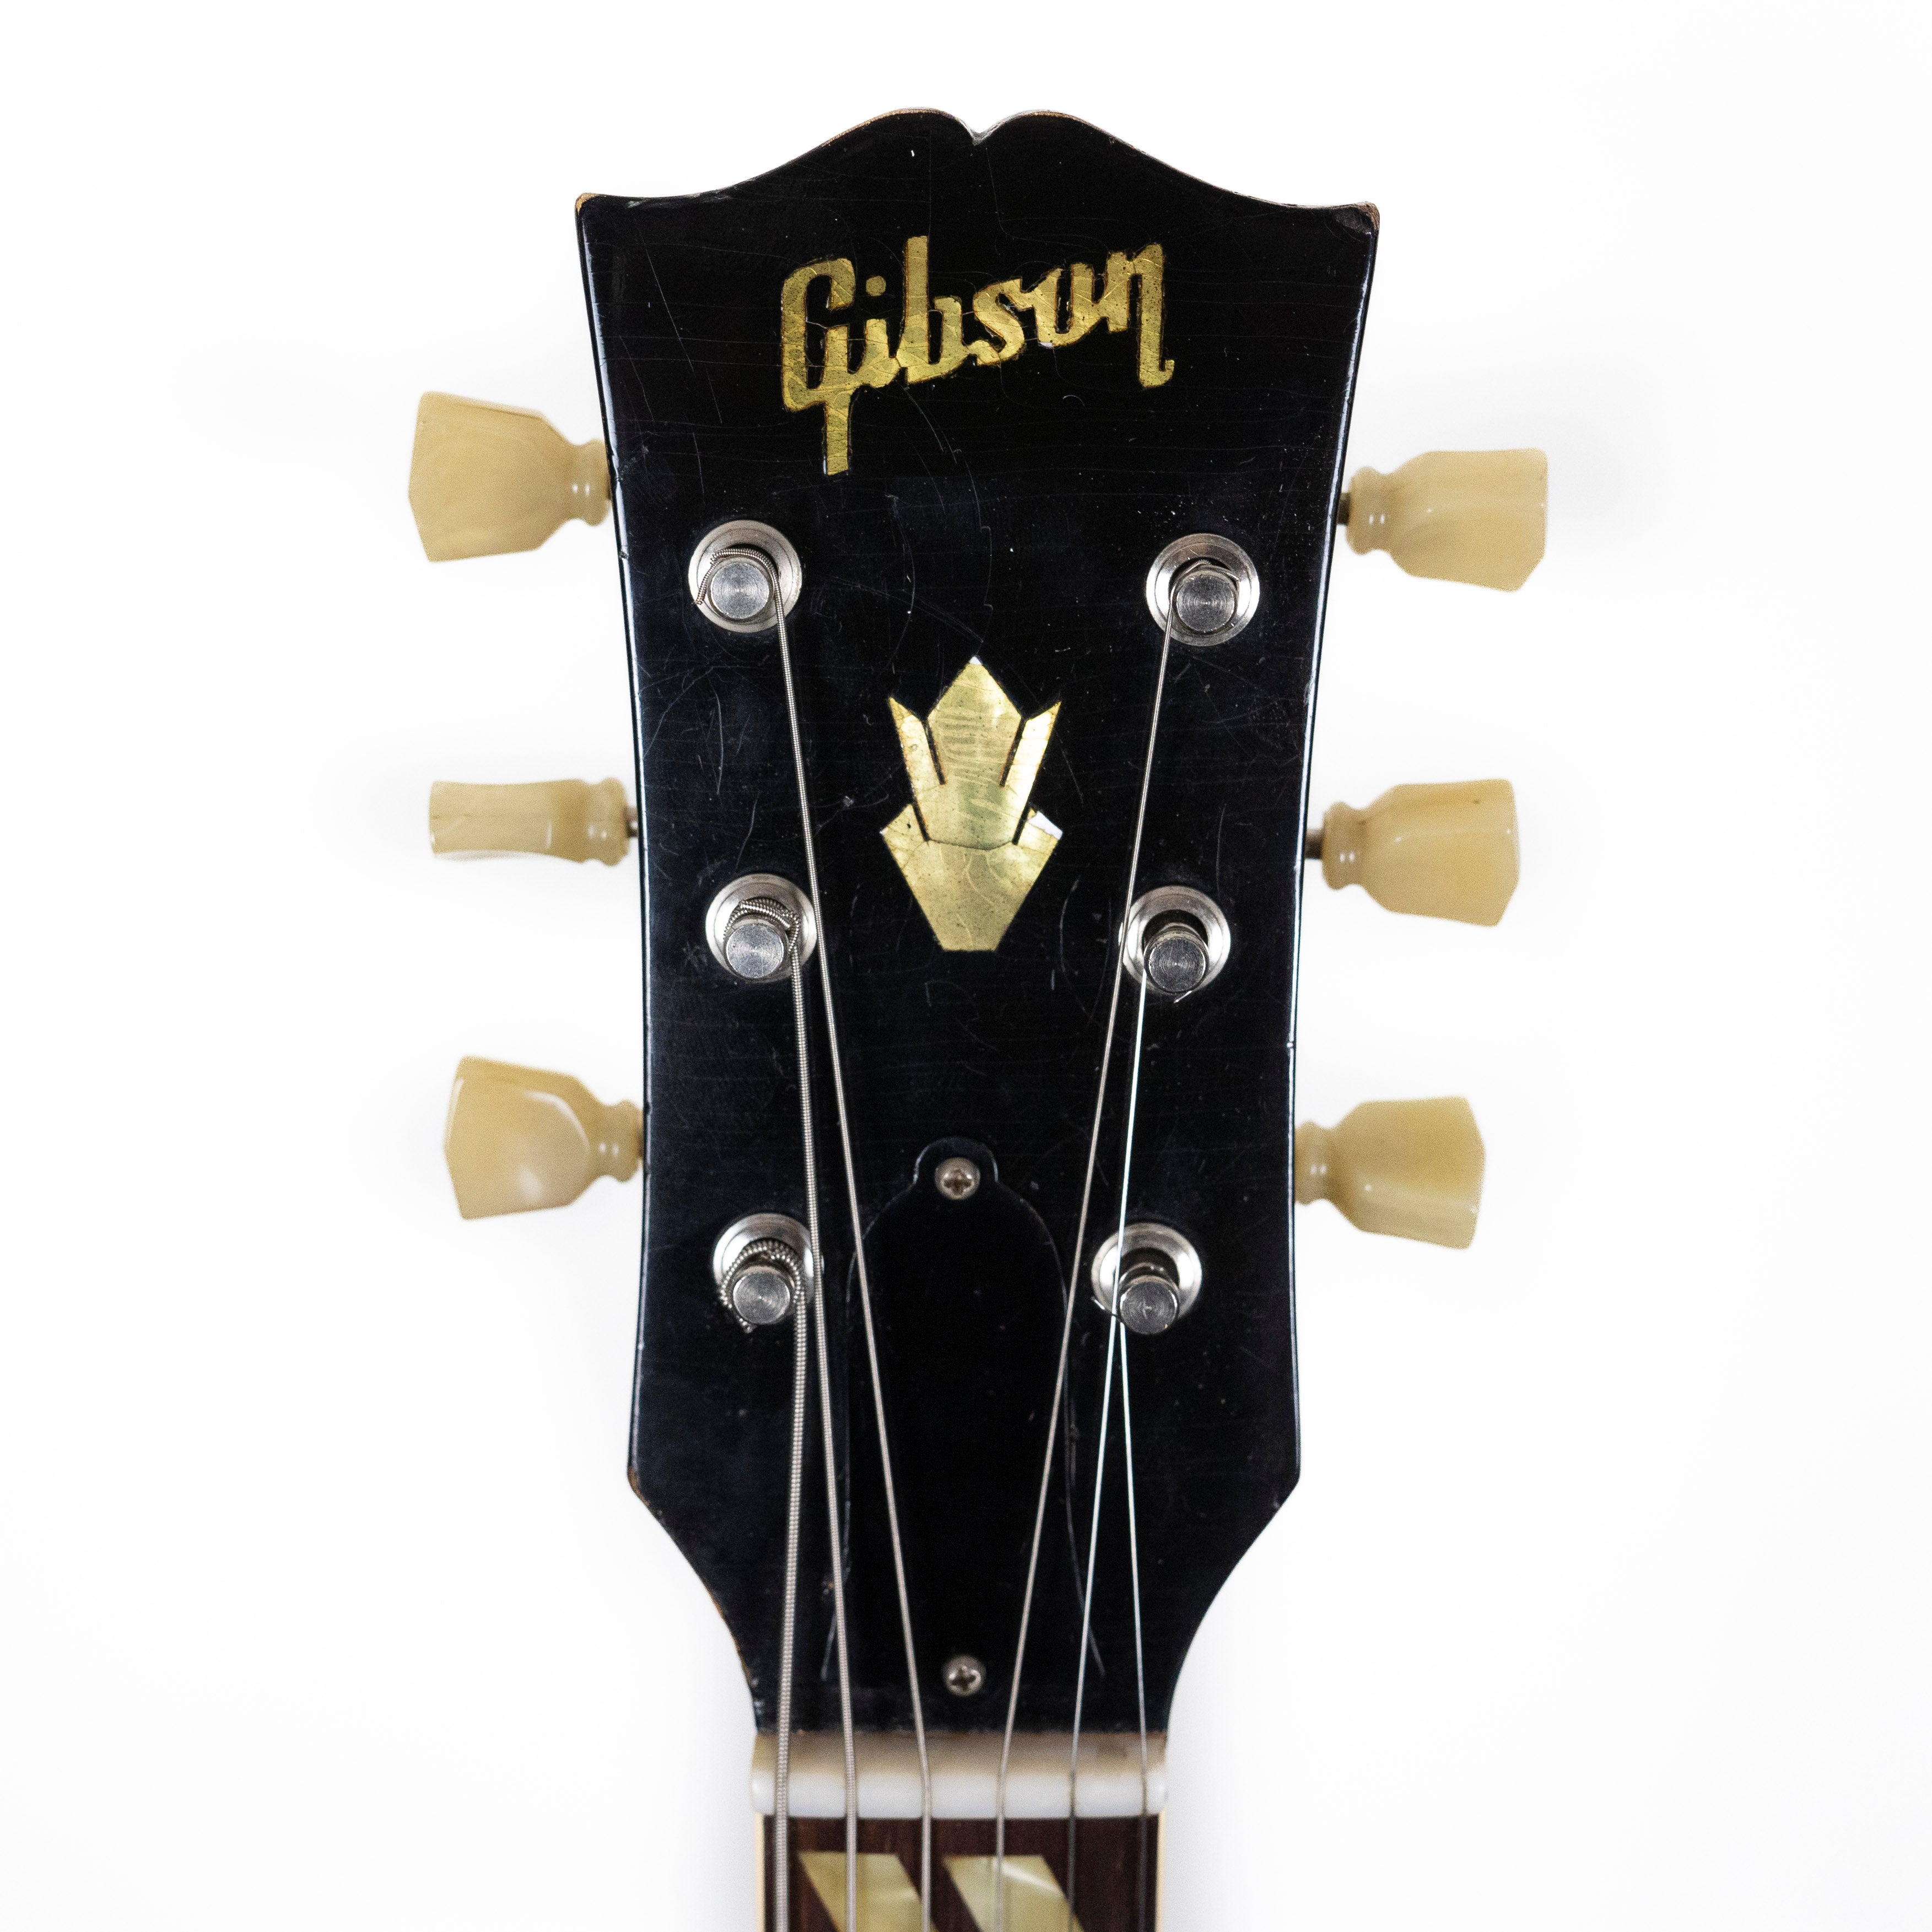 Gibson 1952/53 ES-175 Sunburst